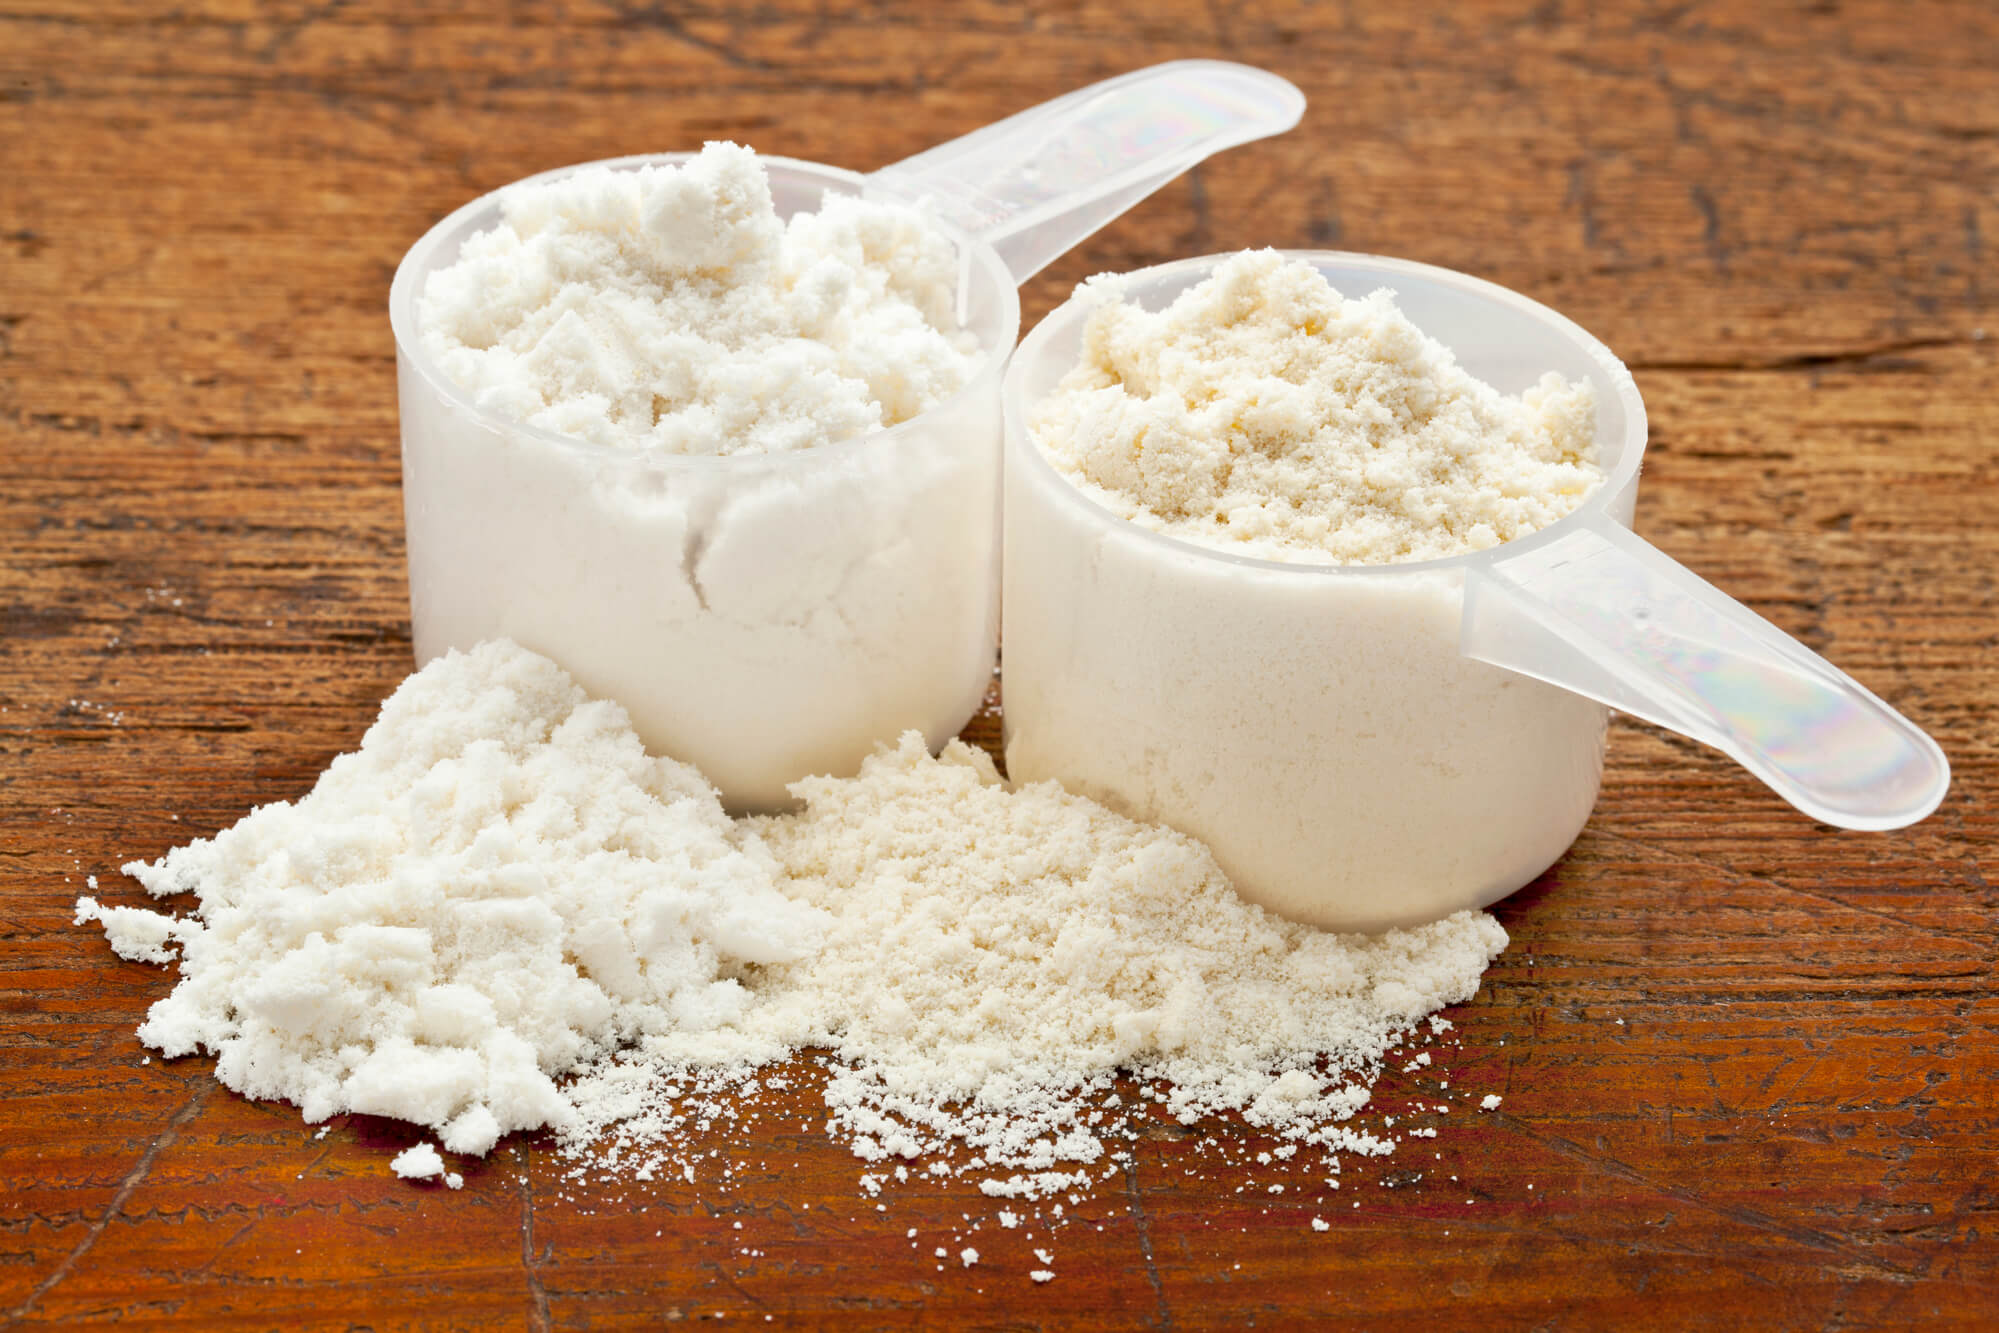 Nativní nebo syrovátkový protein - který je lepší? Záleží na kvalitě mléka